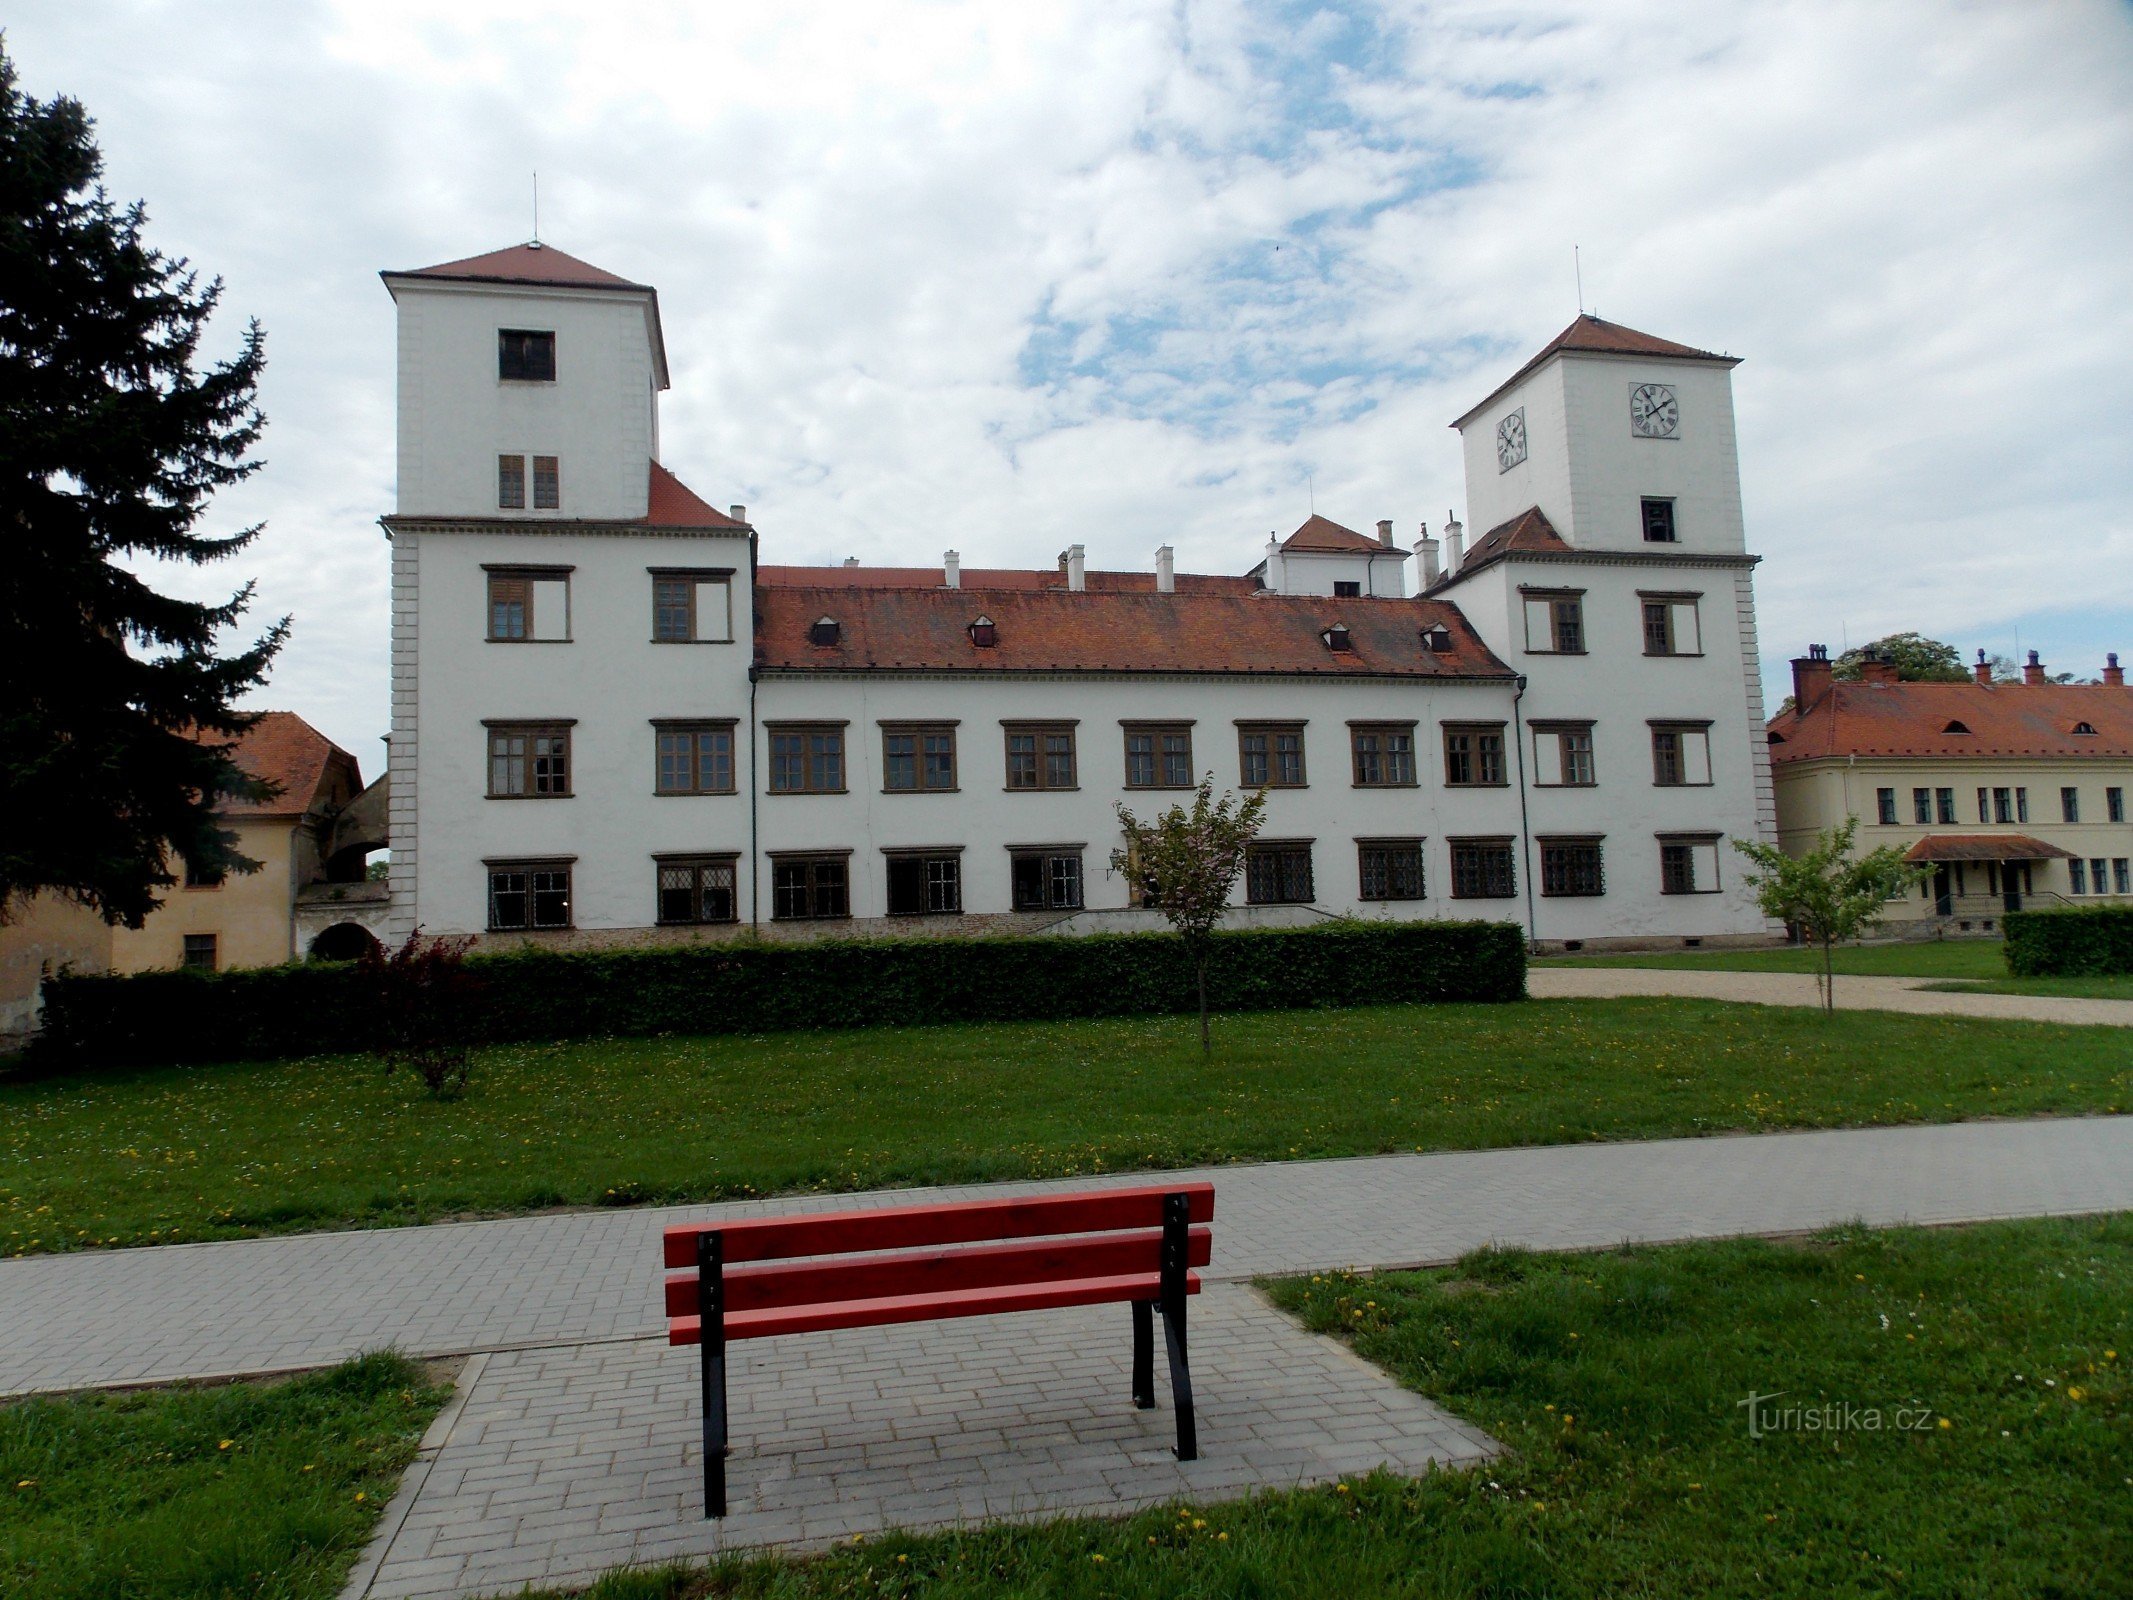 På slottet i Bučovice